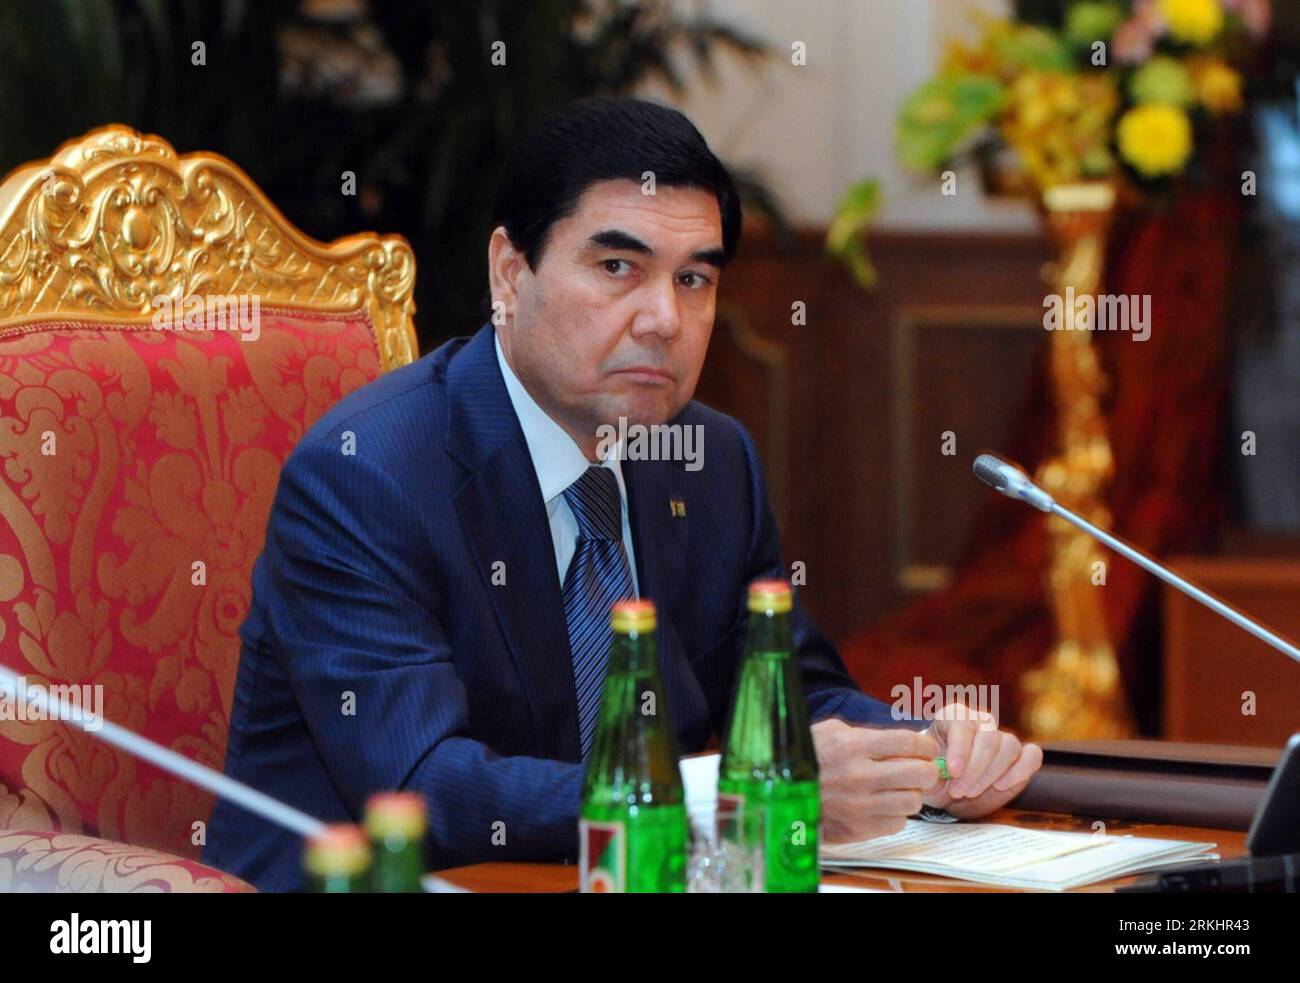 Bildnummer: 55891004 Datum: 03.09.2011 Copyright: imago/Xinhua (110903) -- DUSHANBE, 3 settembre 2011 (Xinhua) -- il presidente turkmeno Gurbanguly Kurbanguly Berdymukhamedov partecipa al vertice della Comunità degli Stati indipendenti (CSI) a Dushanbe, capitale del Tagikistan, 3 settembre 2011. I leader della CSI hanno chiesto di firmare un accordo di libero scambio ritardato e di risolvere pacificamente i conflitti sabato. (Xinhua)(zf) VERTICE TAGIKISTAN-DUSHANBE-CIS PUBLICATIONxNOTxINxCHN People Politik Gemeinschaft Unabhängiger Staaten GUS Gipfel Gipfeltreffen premiumd xbs 2011 quer Bildnummer 55891004 Data 03 09 2011 Copyri Foto Stock